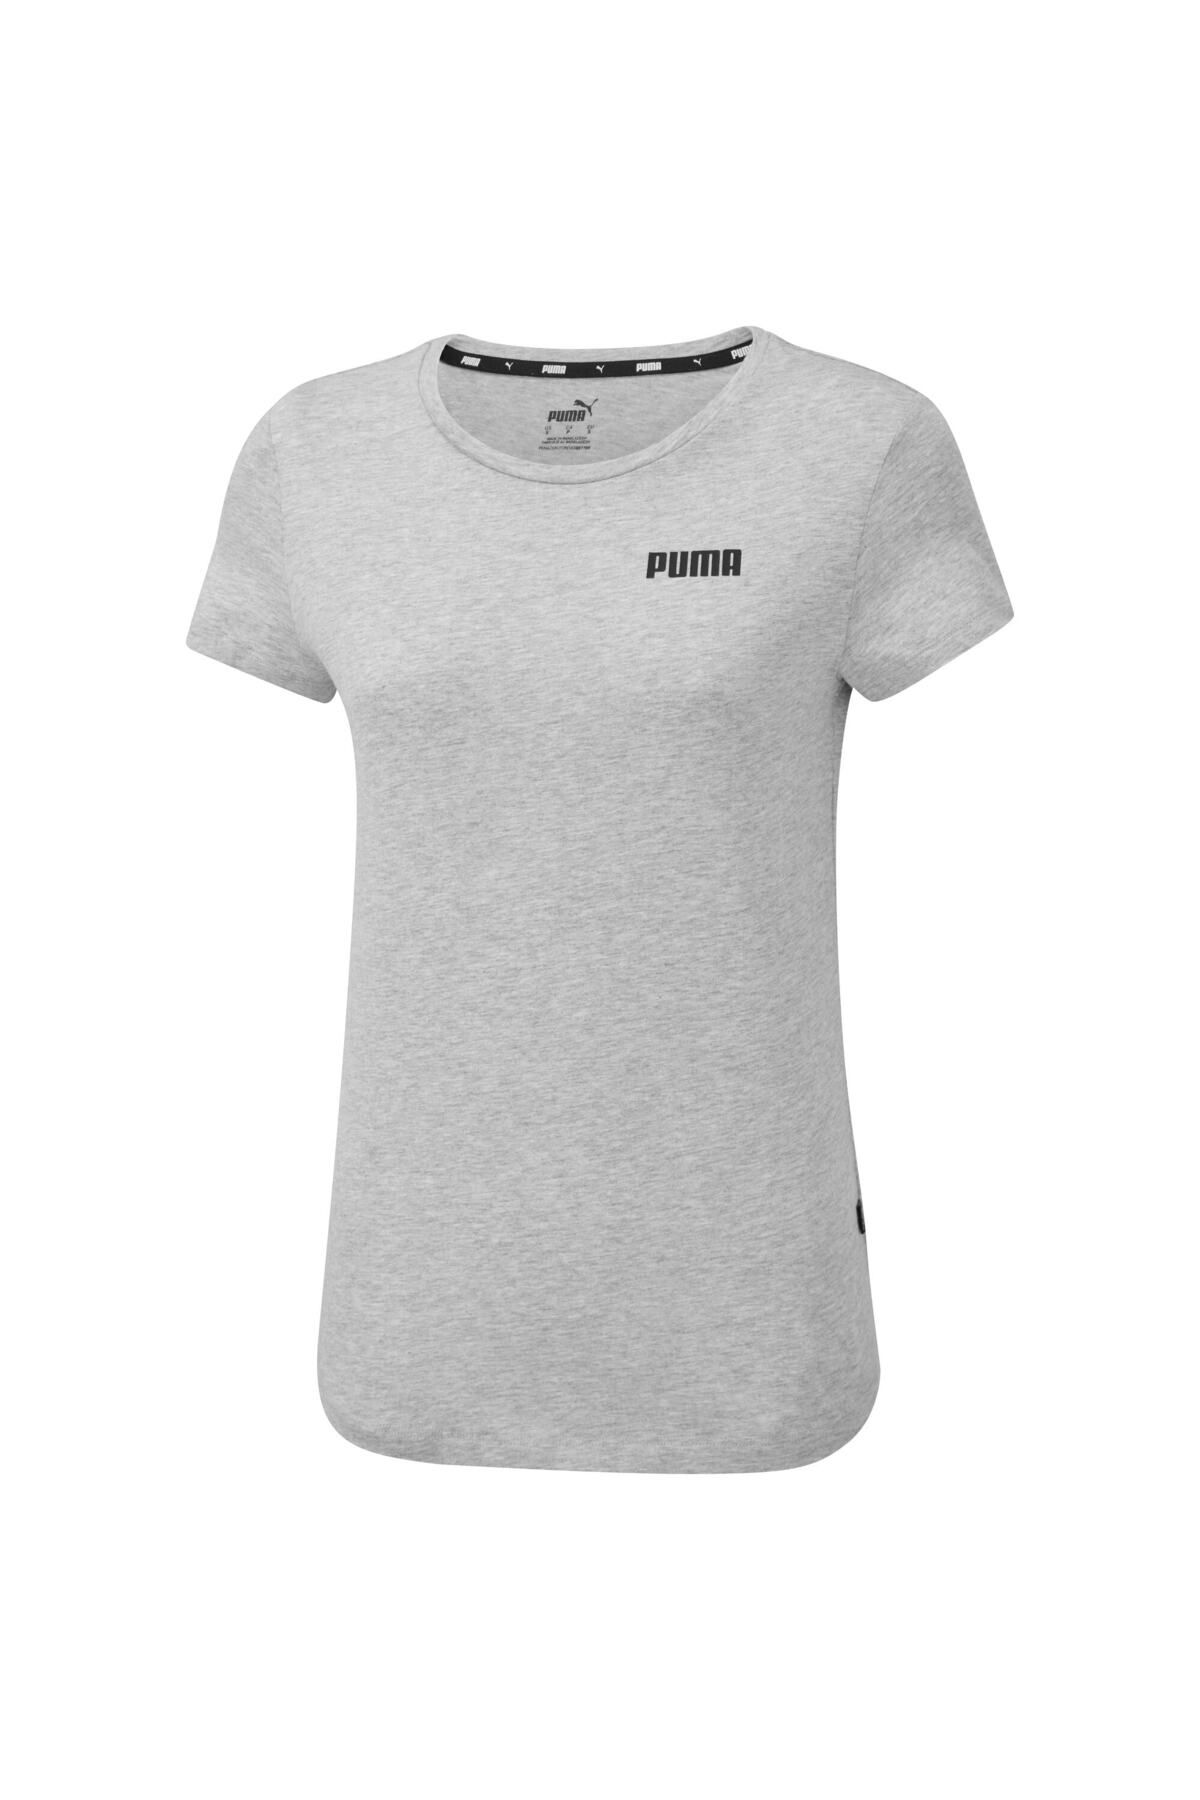 Puma ESSENTIALS Kadın Tişört